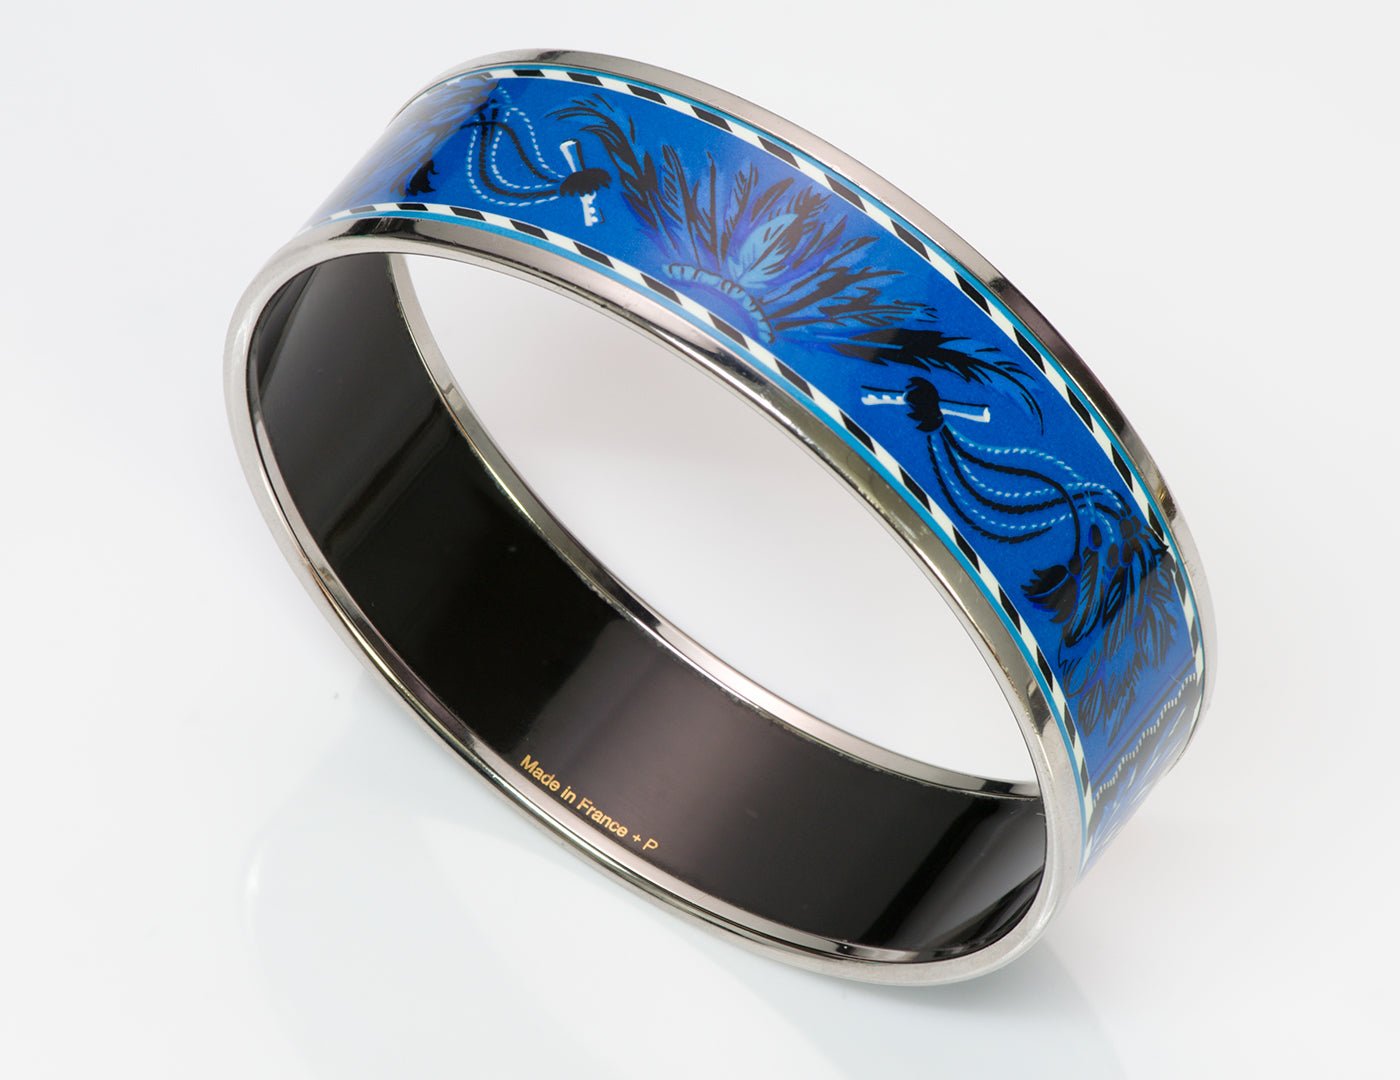 Hermes Brazil Blue Enamel Bangle Bracelet